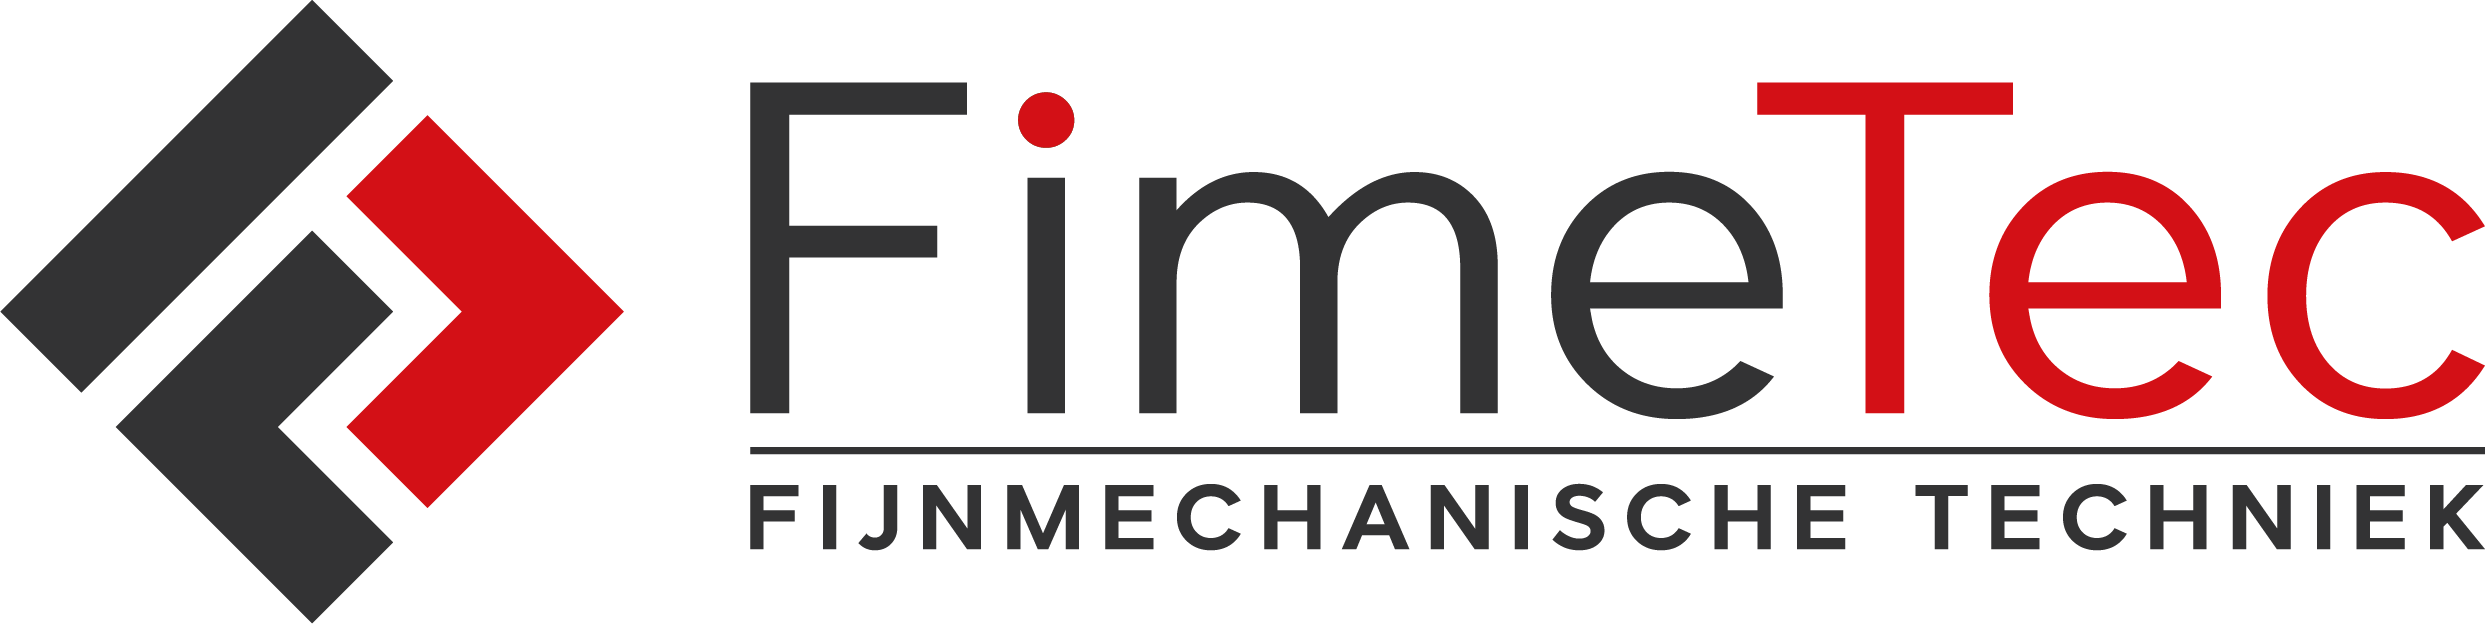 Fimetec | Fijnmechanische Techniek